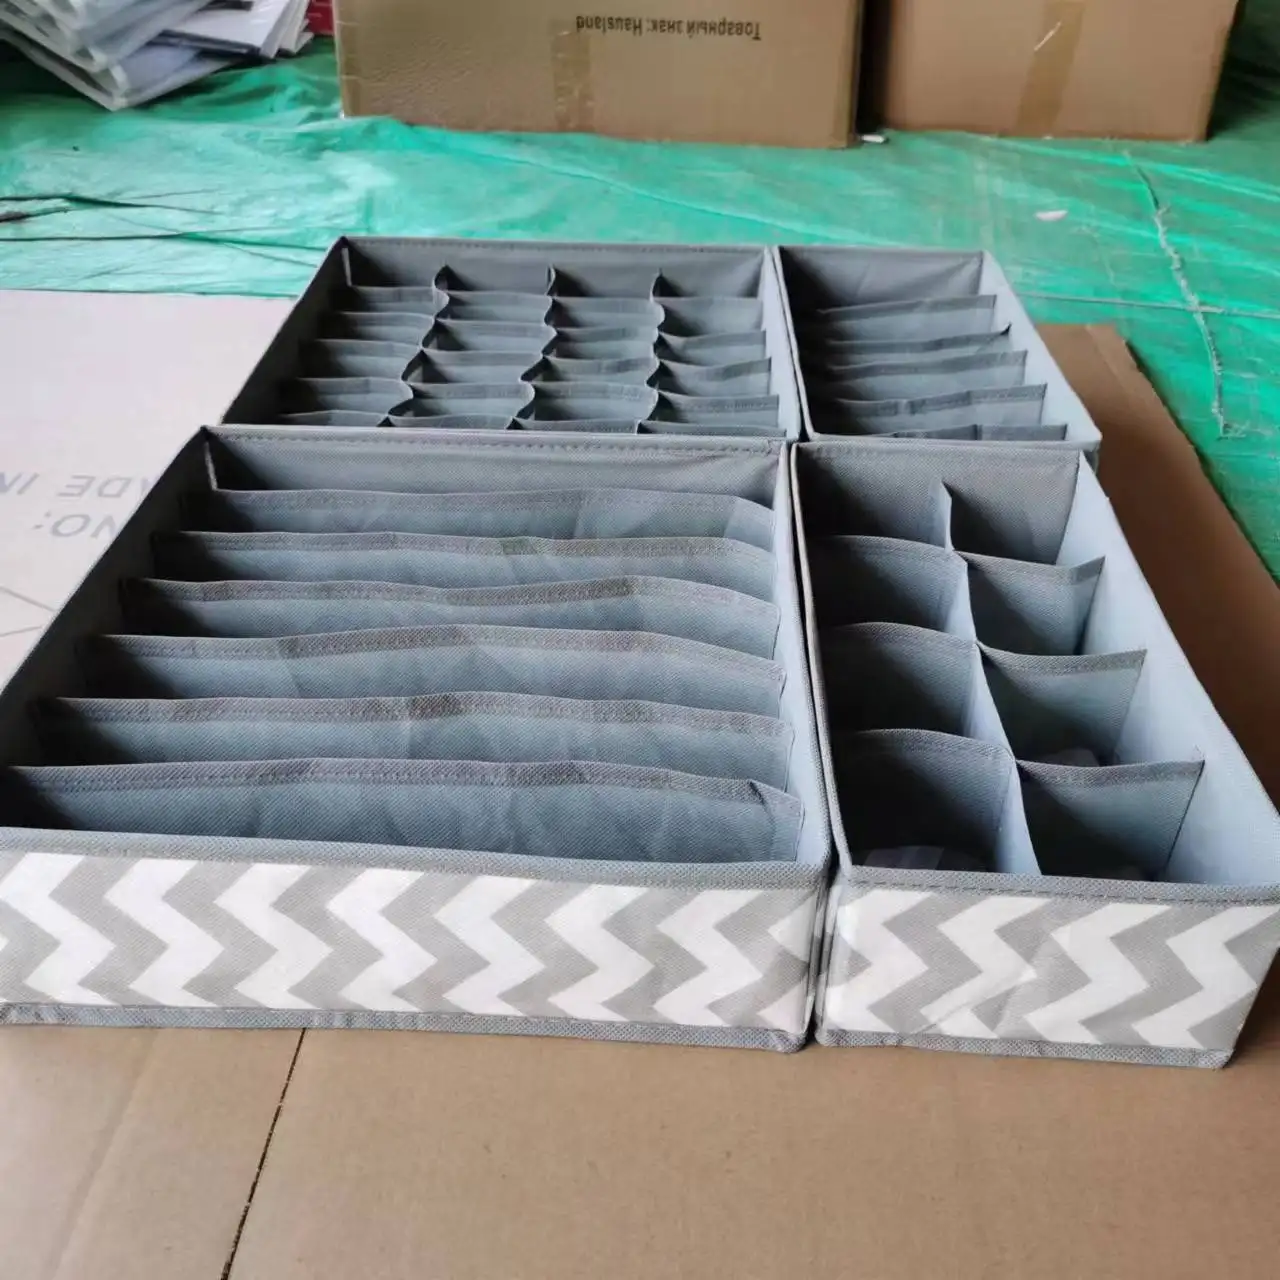 Çeşitli ızgara tasarımı basit dokunmamış ev saklama kutusu iç çamaşırı organizatör kutuları sutyen kravat çorap katlanır konteyner organizatörler